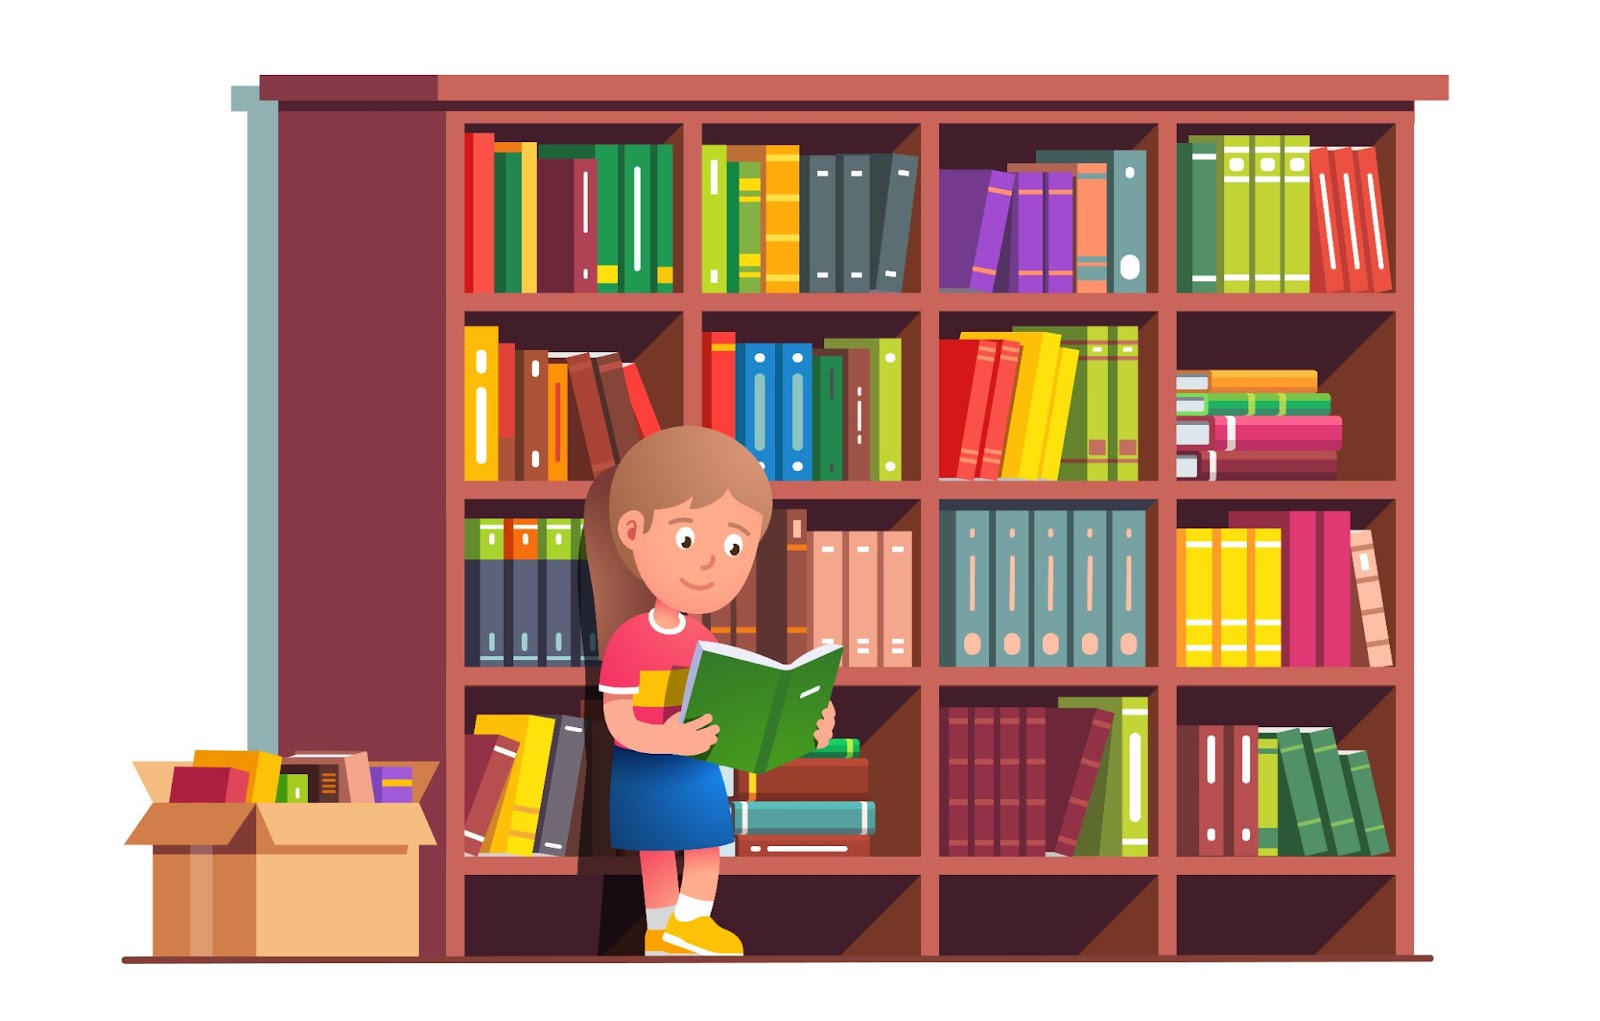 Kitaplarla dolu büyük kitaplığa yaslanmış kitap okuyan çocuk. Üstün yetenekli çocuklar, konsept, illüstrasyon